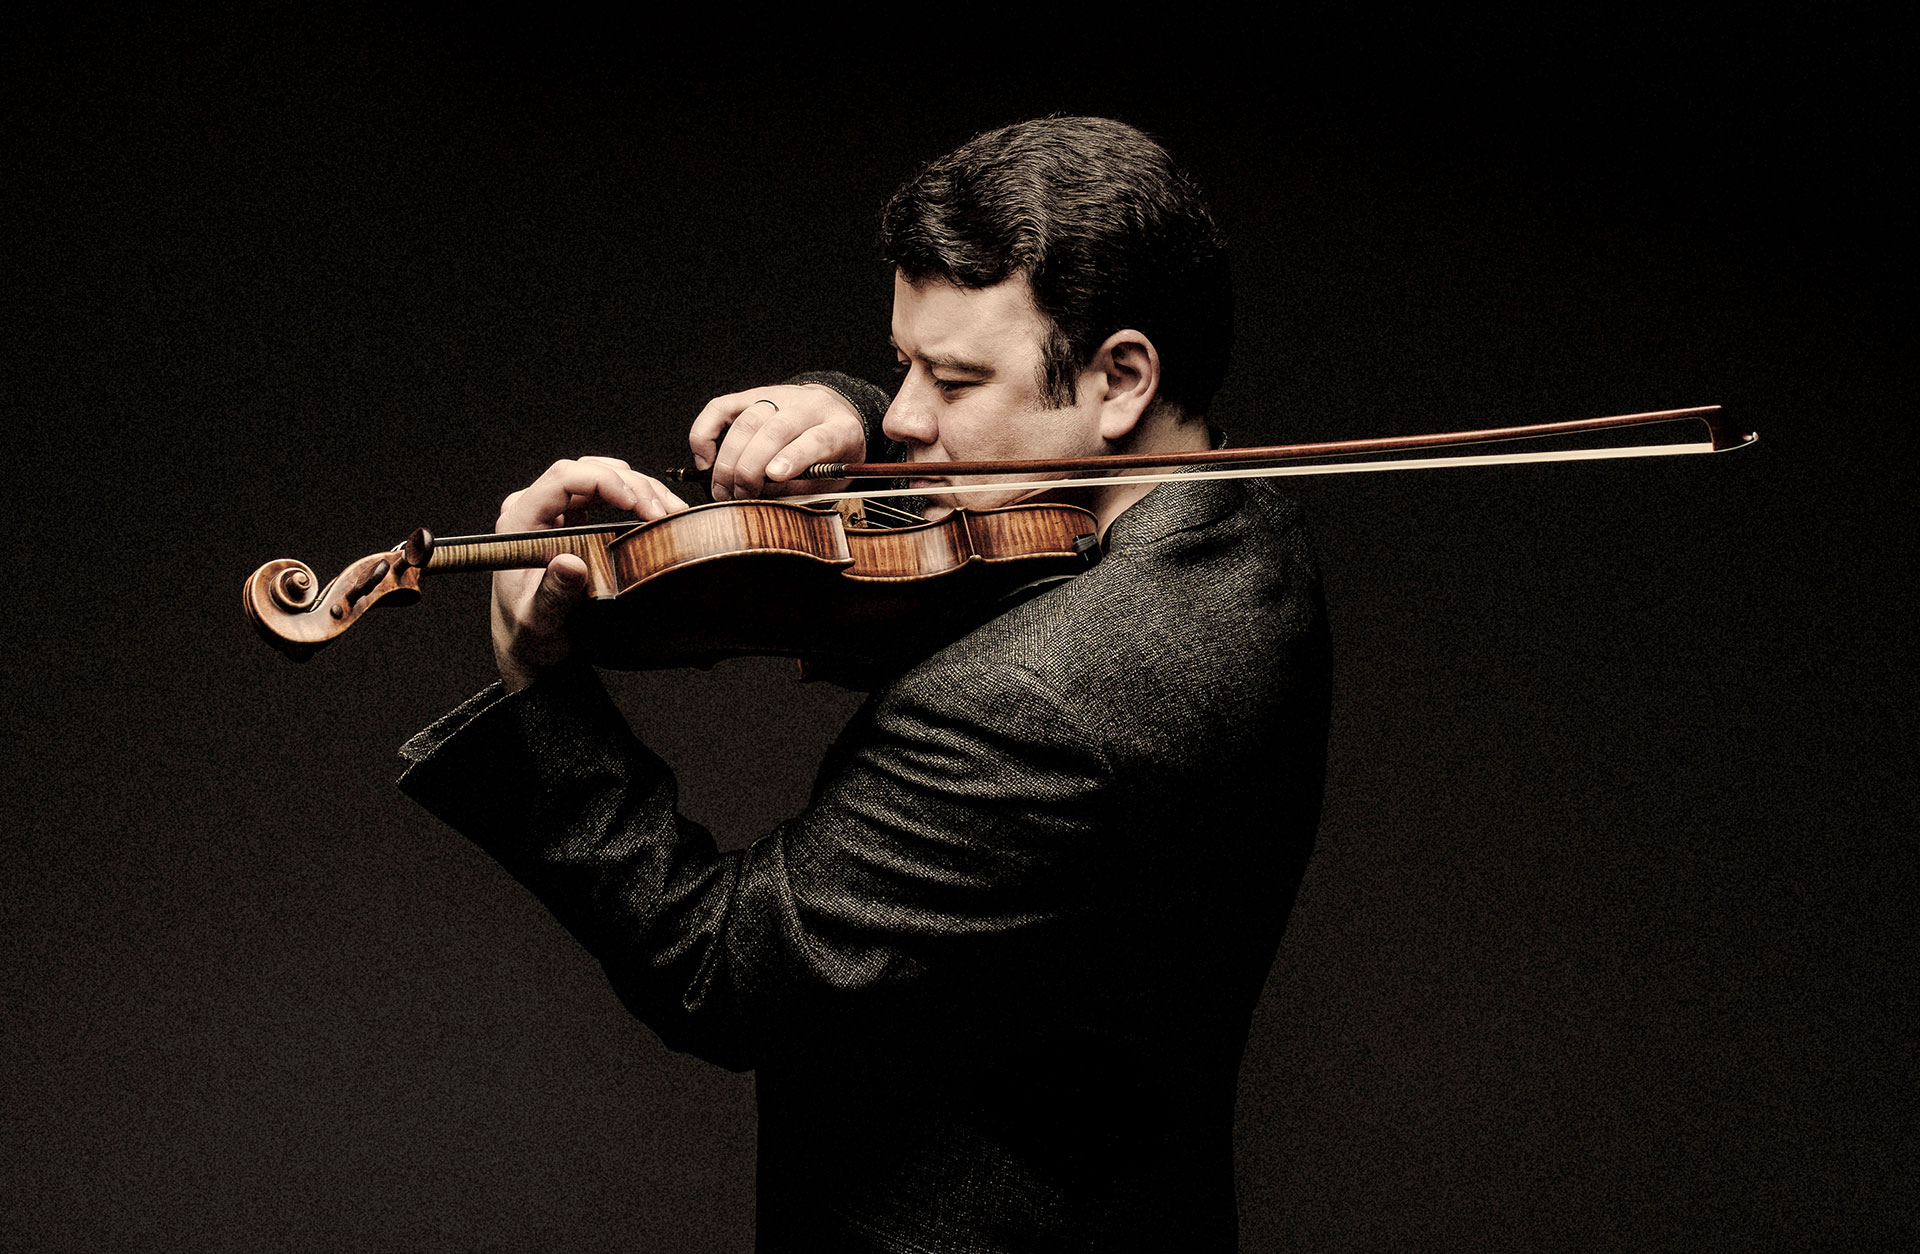 Violinisten Vadim Gluzman spelar passionerat på sitt instrument.